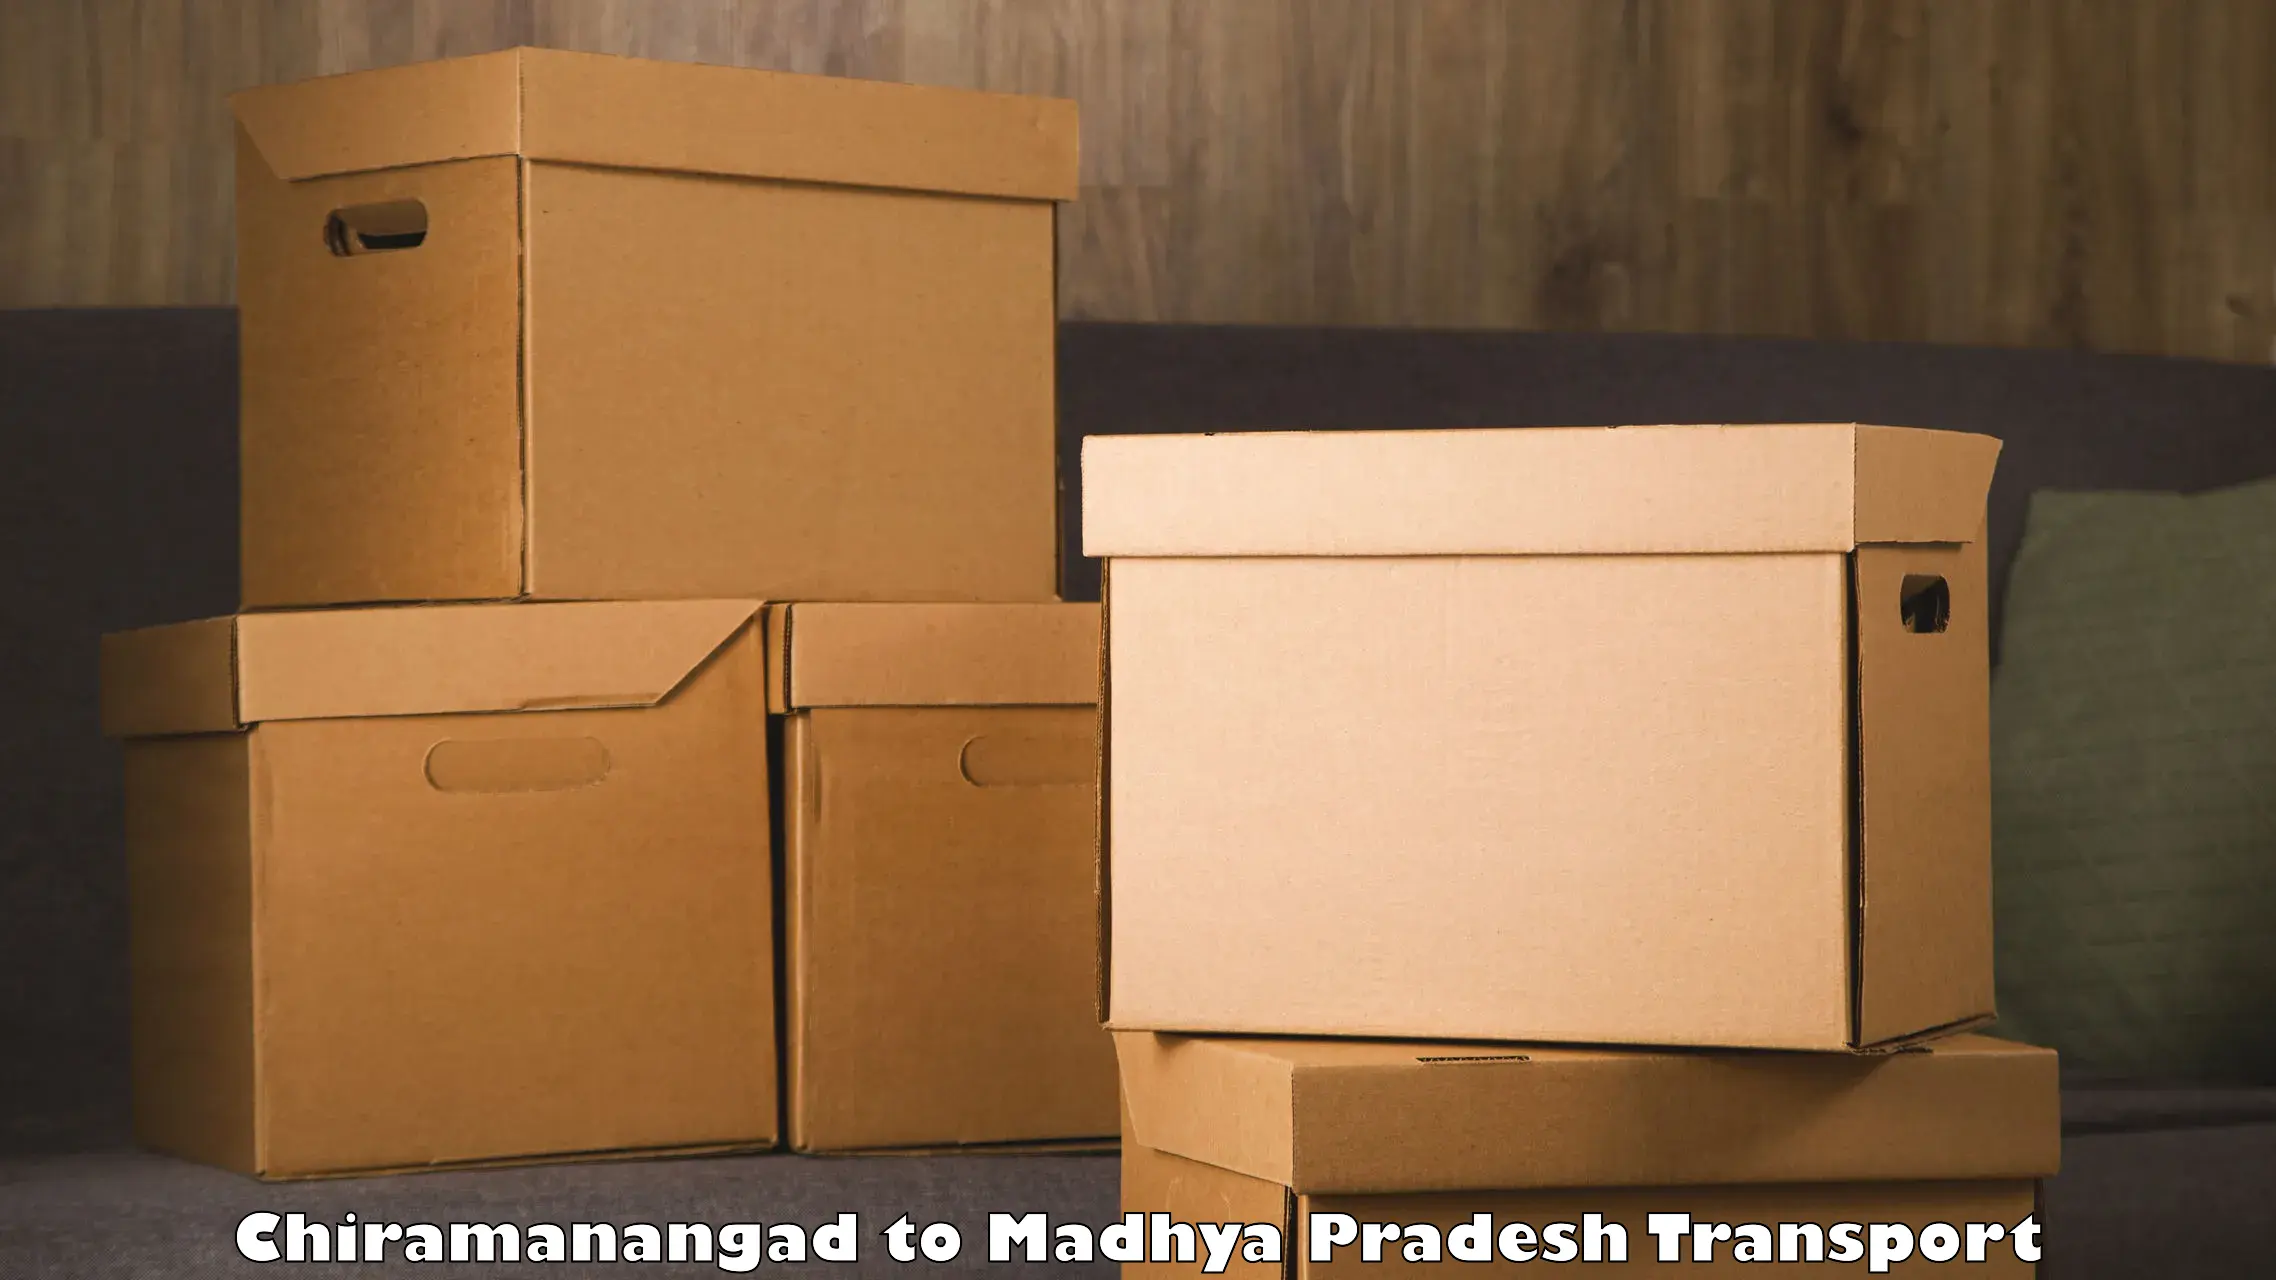 Land transport services Chiramanangad to Madhya Pradesh